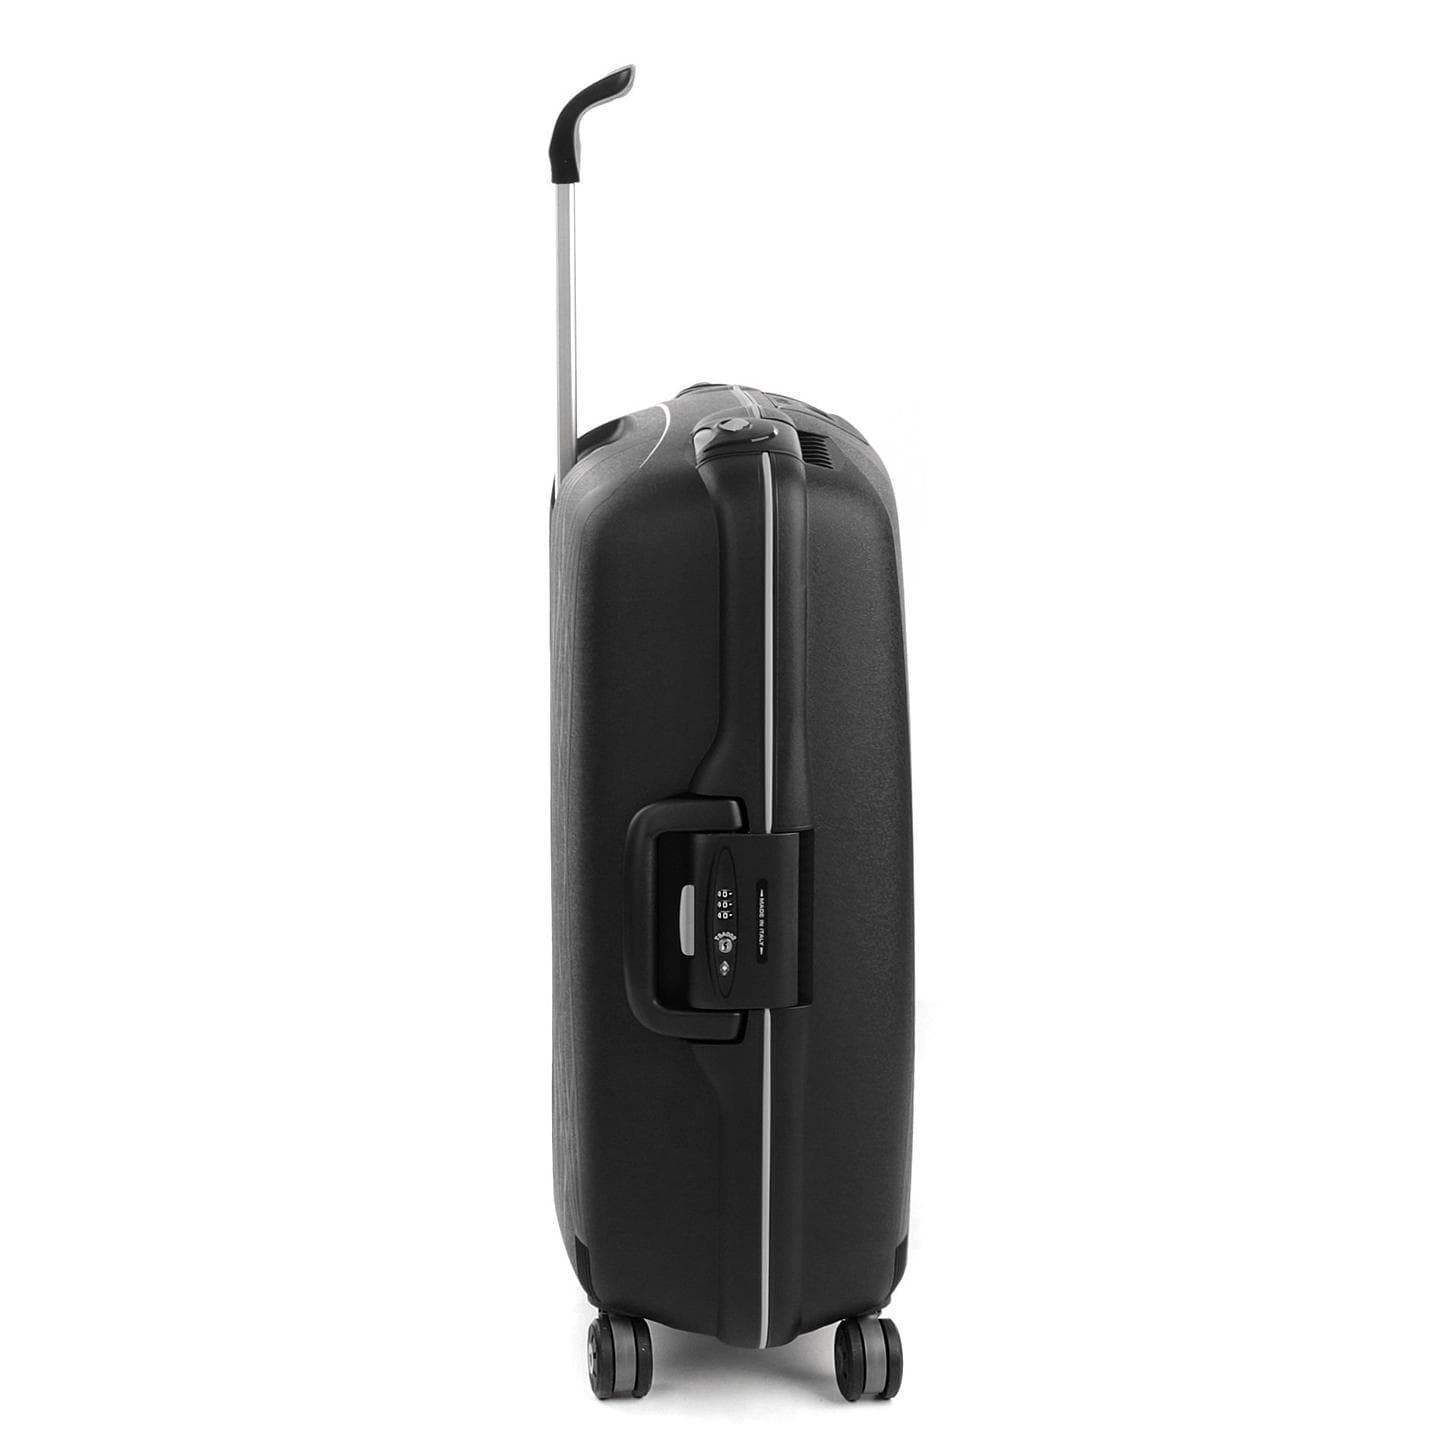 maleta mediana roncato light spinner 4 ruedas negra - Imagen 3